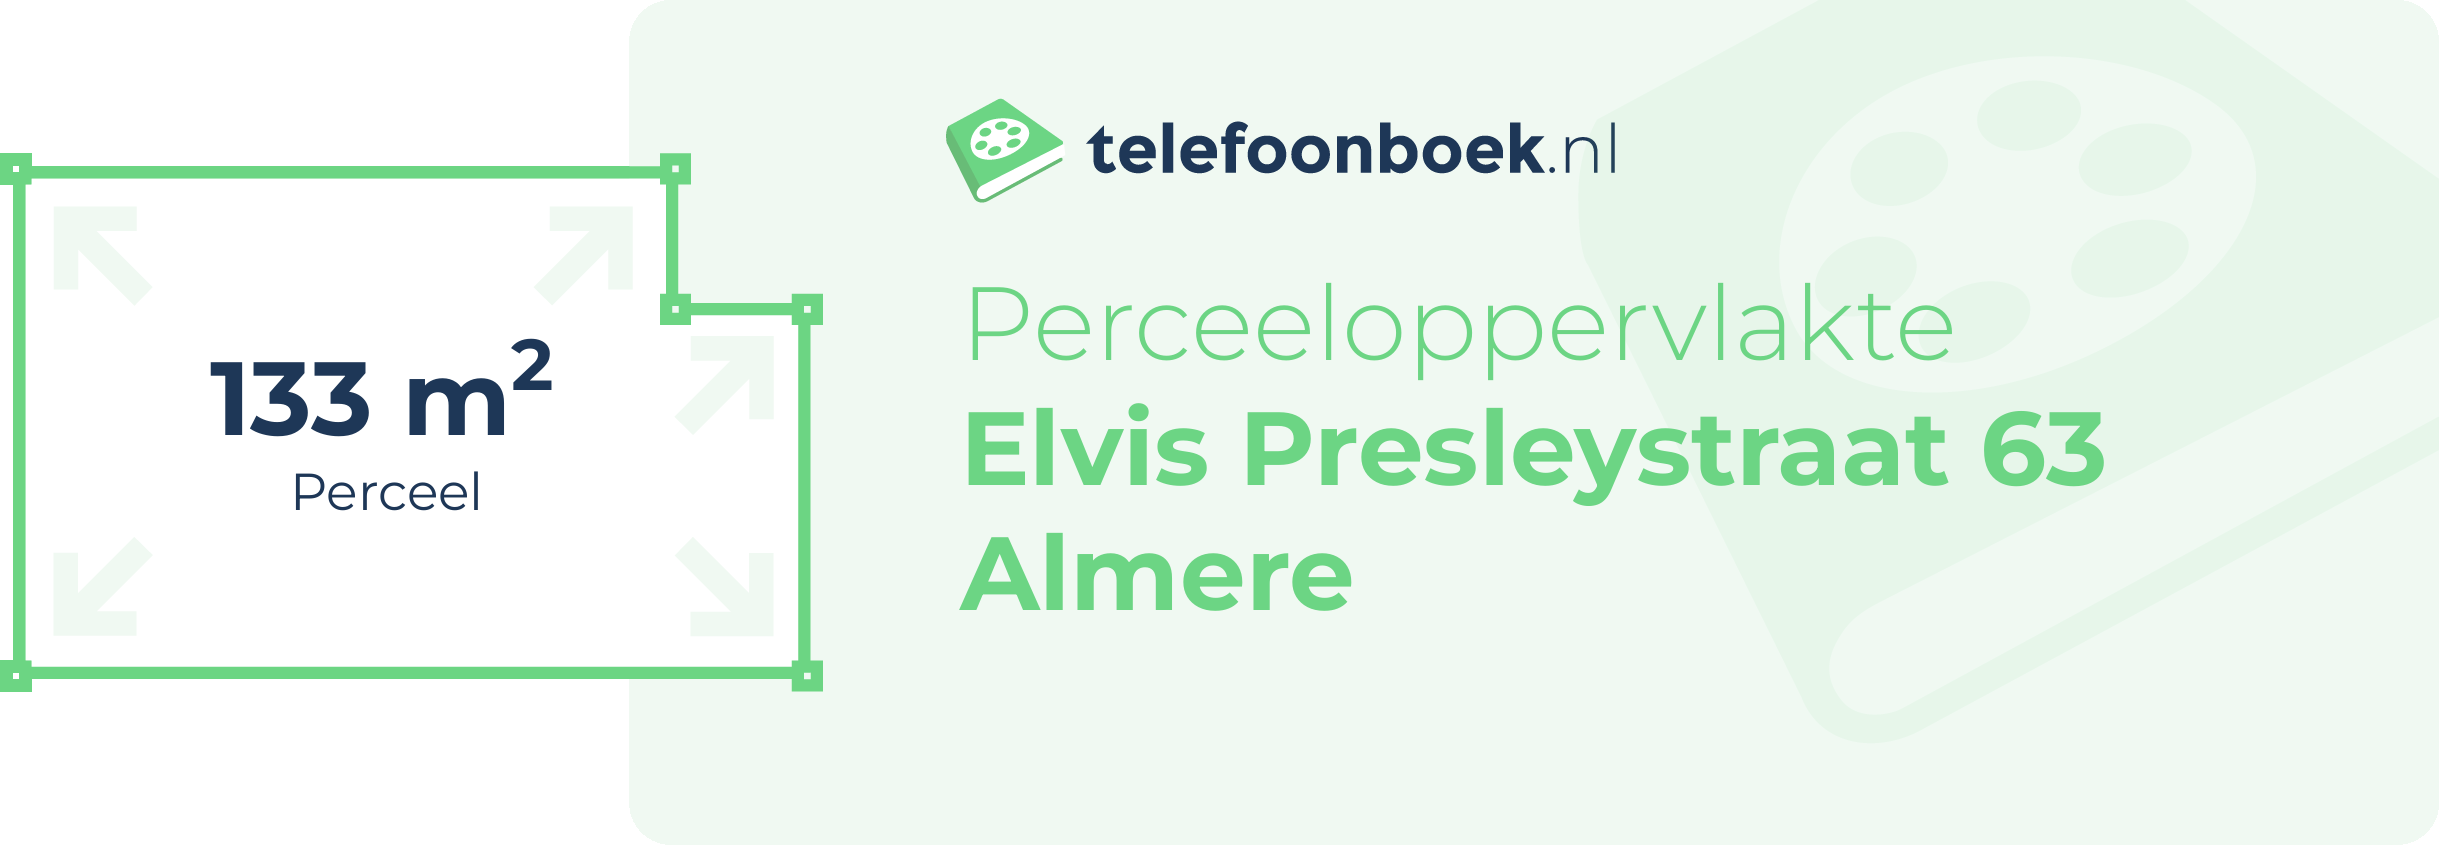 Perceeloppervlakte Elvis Presleystraat 63 Almere